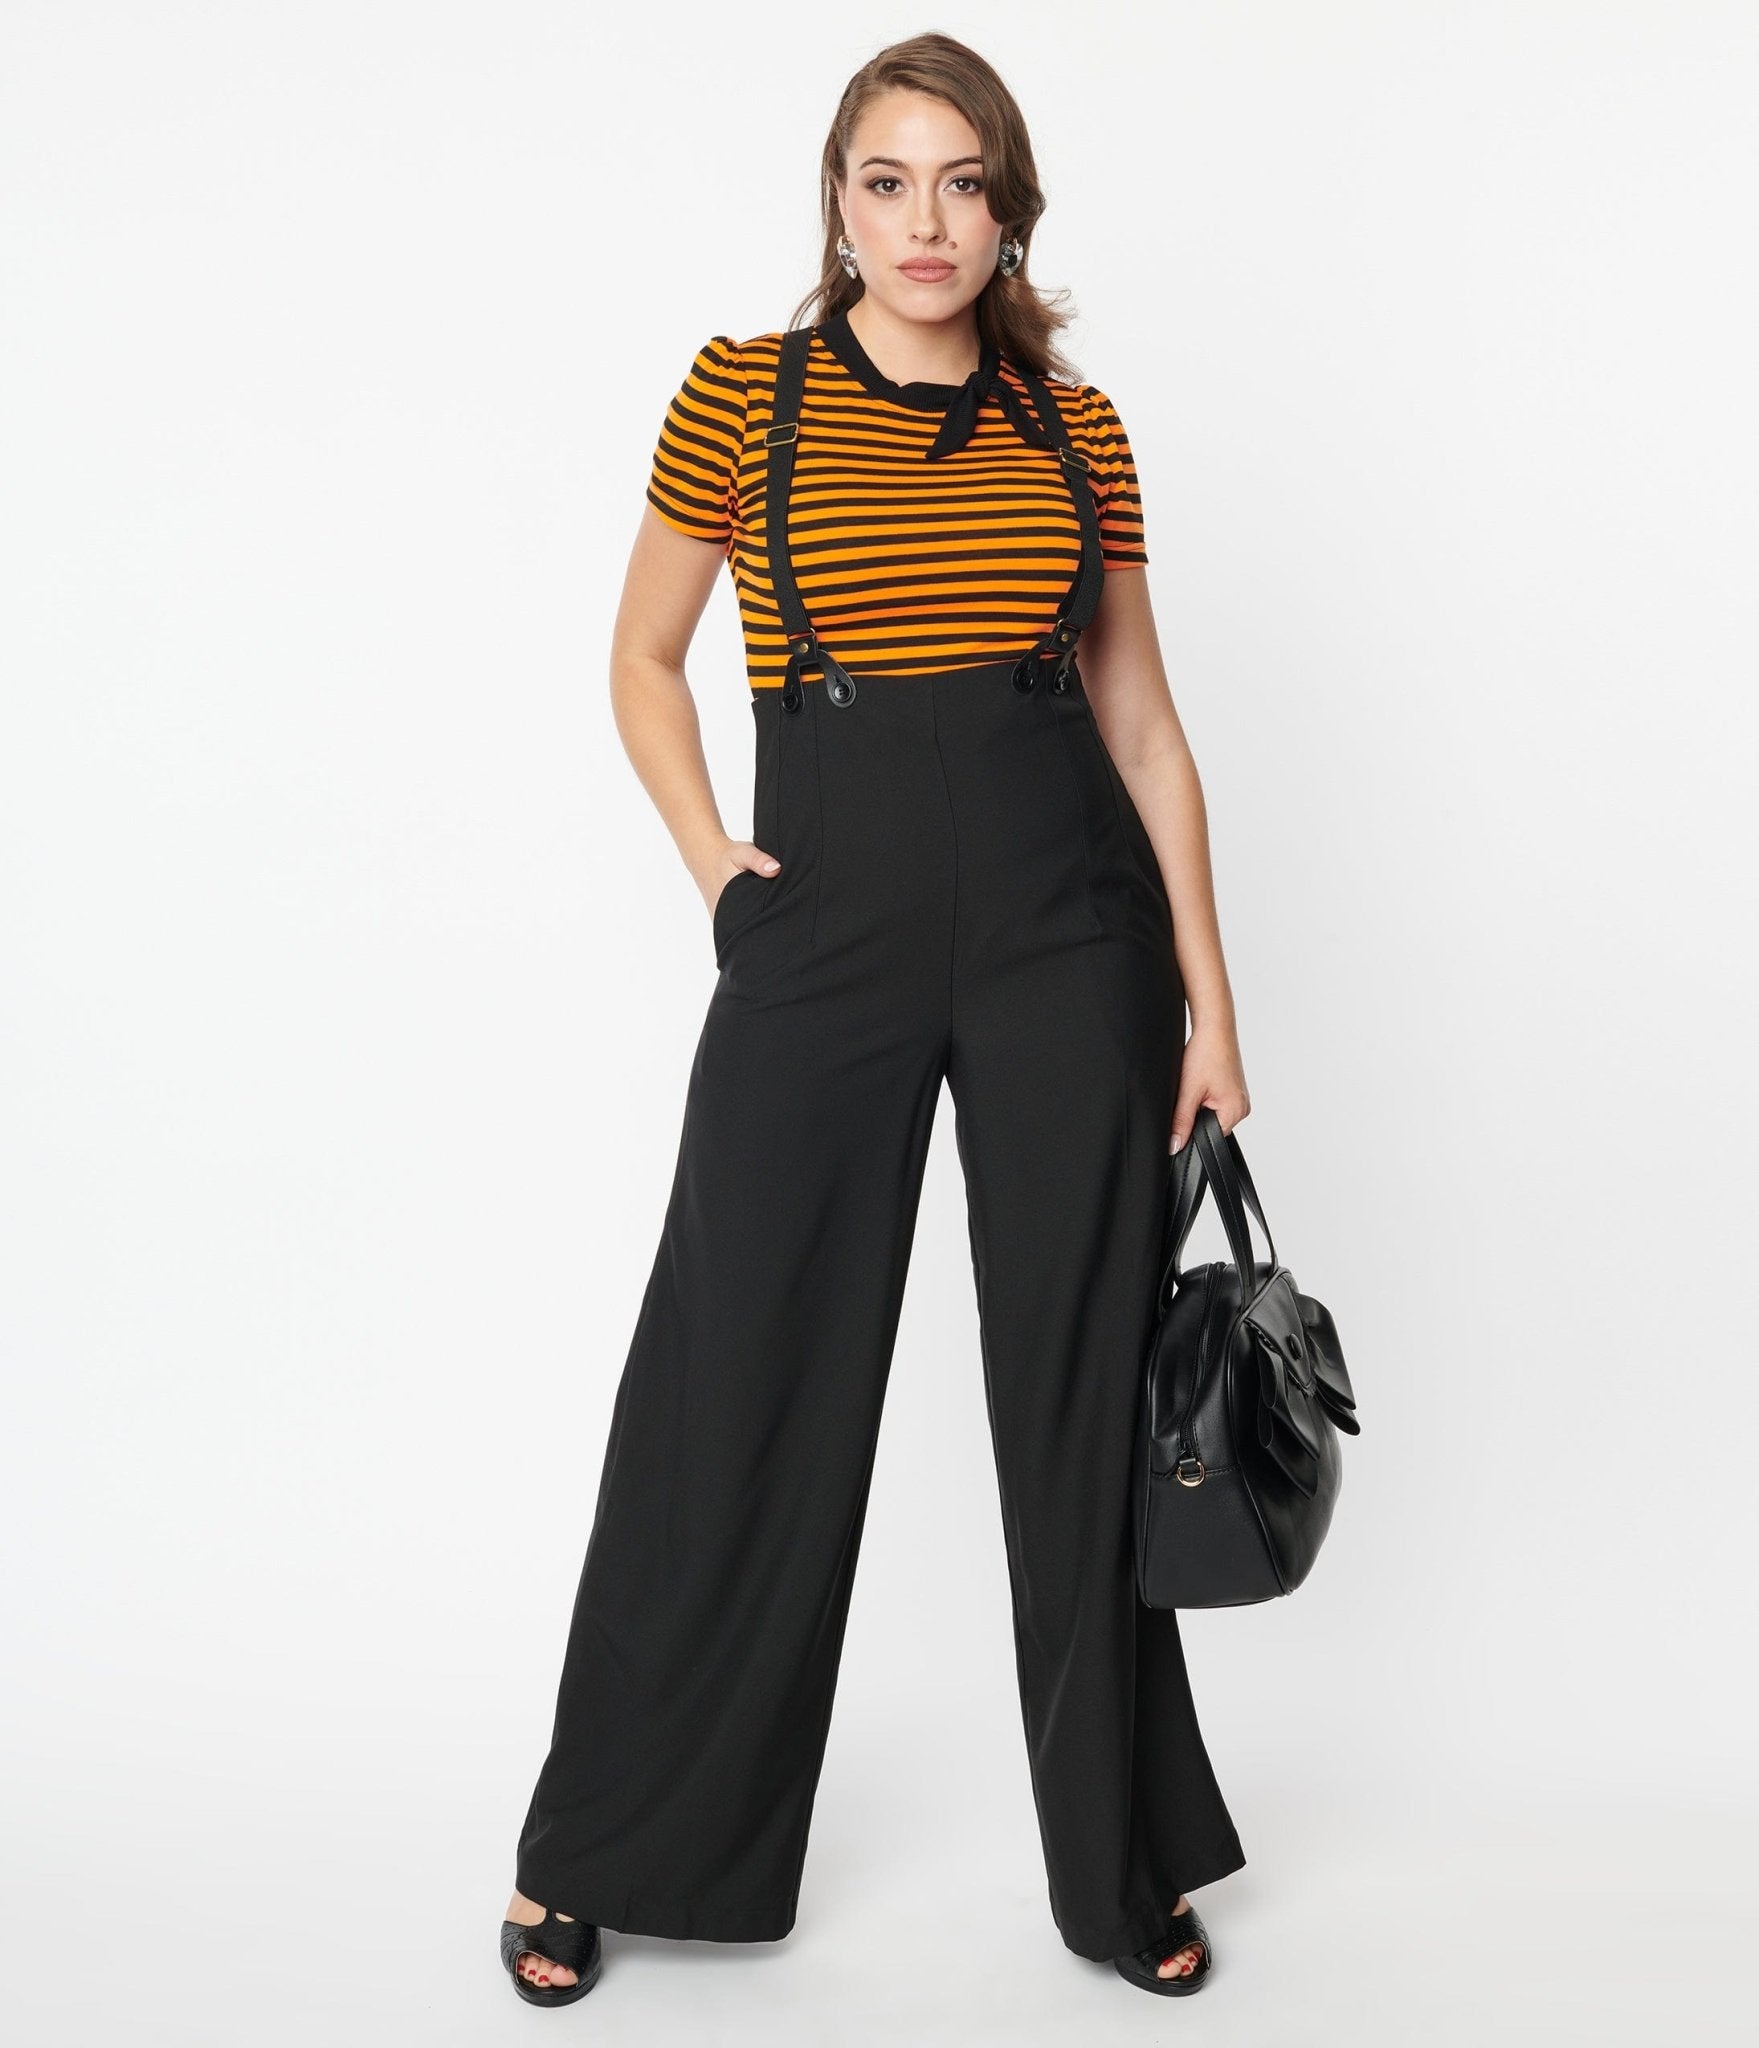 https://www.unique-vintage.com/cdn/shop/products/unique-vintage-black-high-waist-suspender-pants-566662.jpg?v=1703098858&width=1920